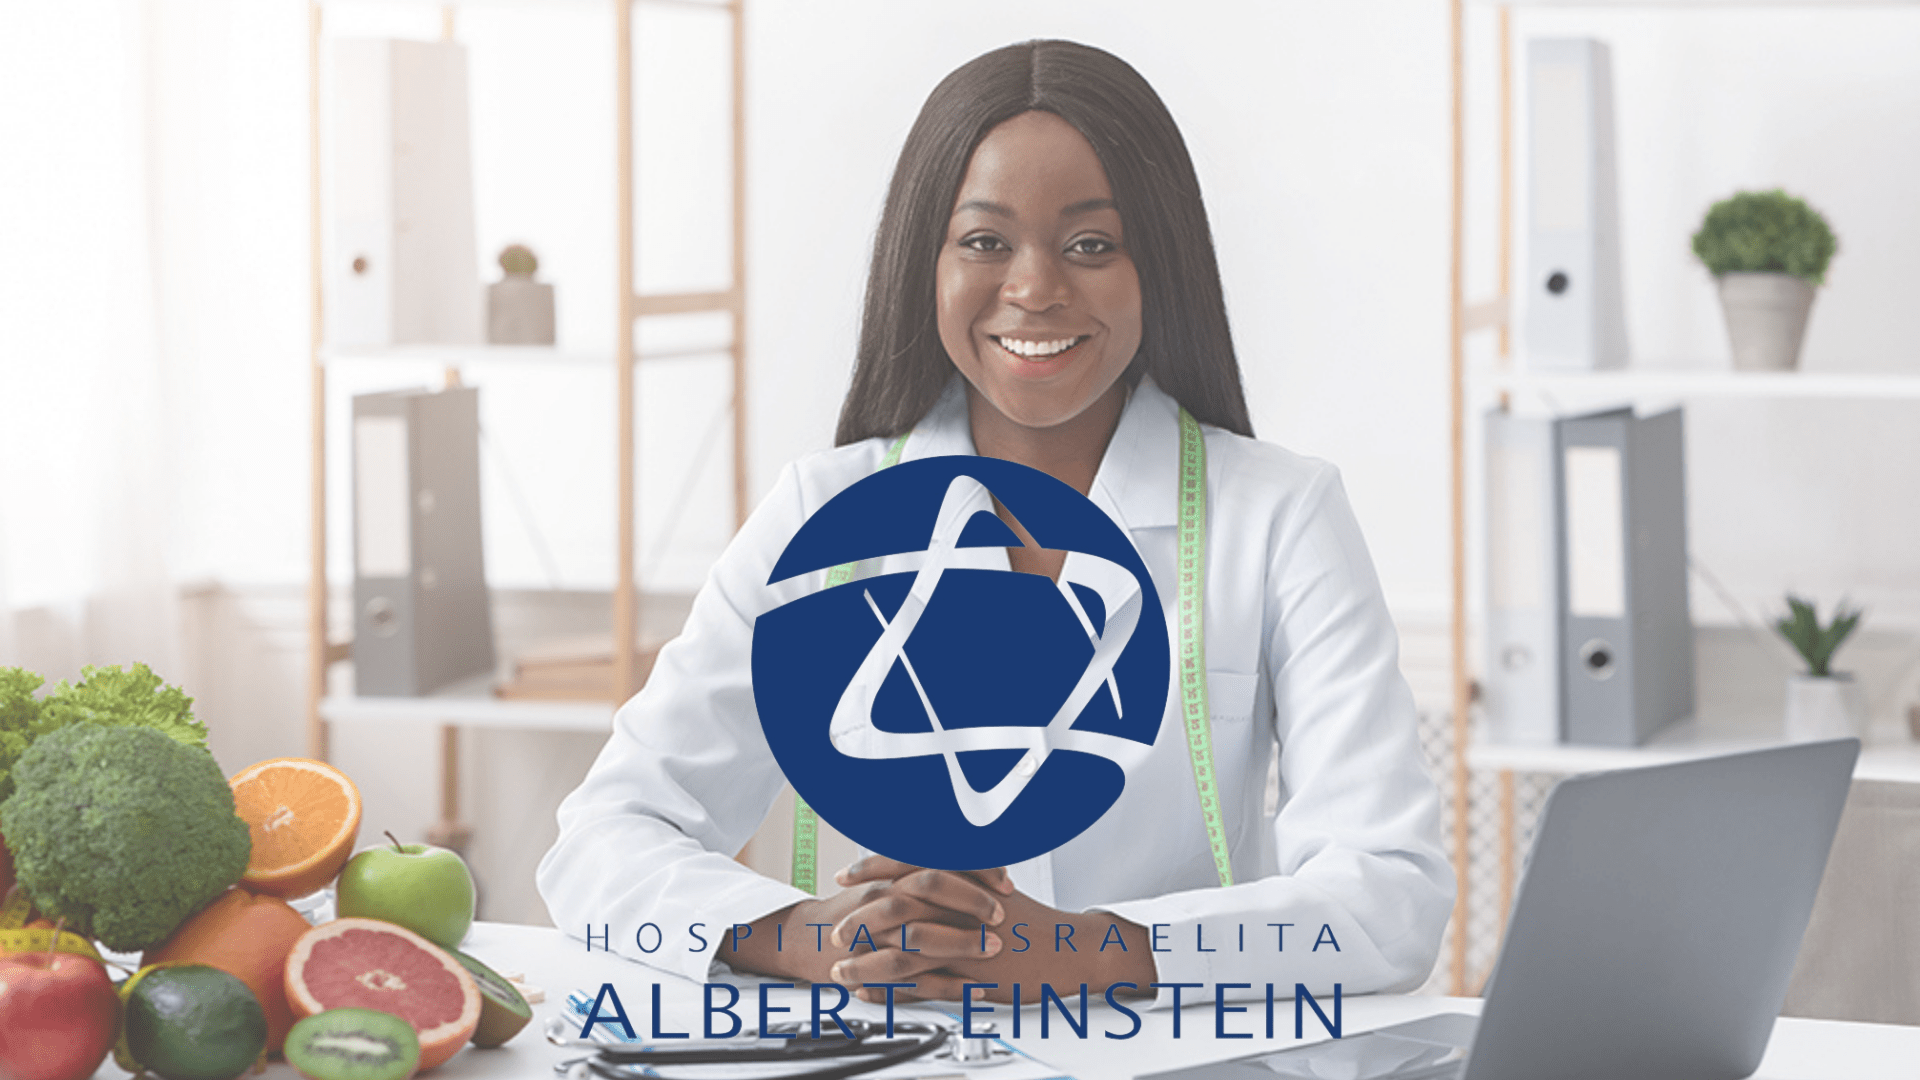 vaga-nutricionista-hospital-albert-einstein-rh-vagas-online